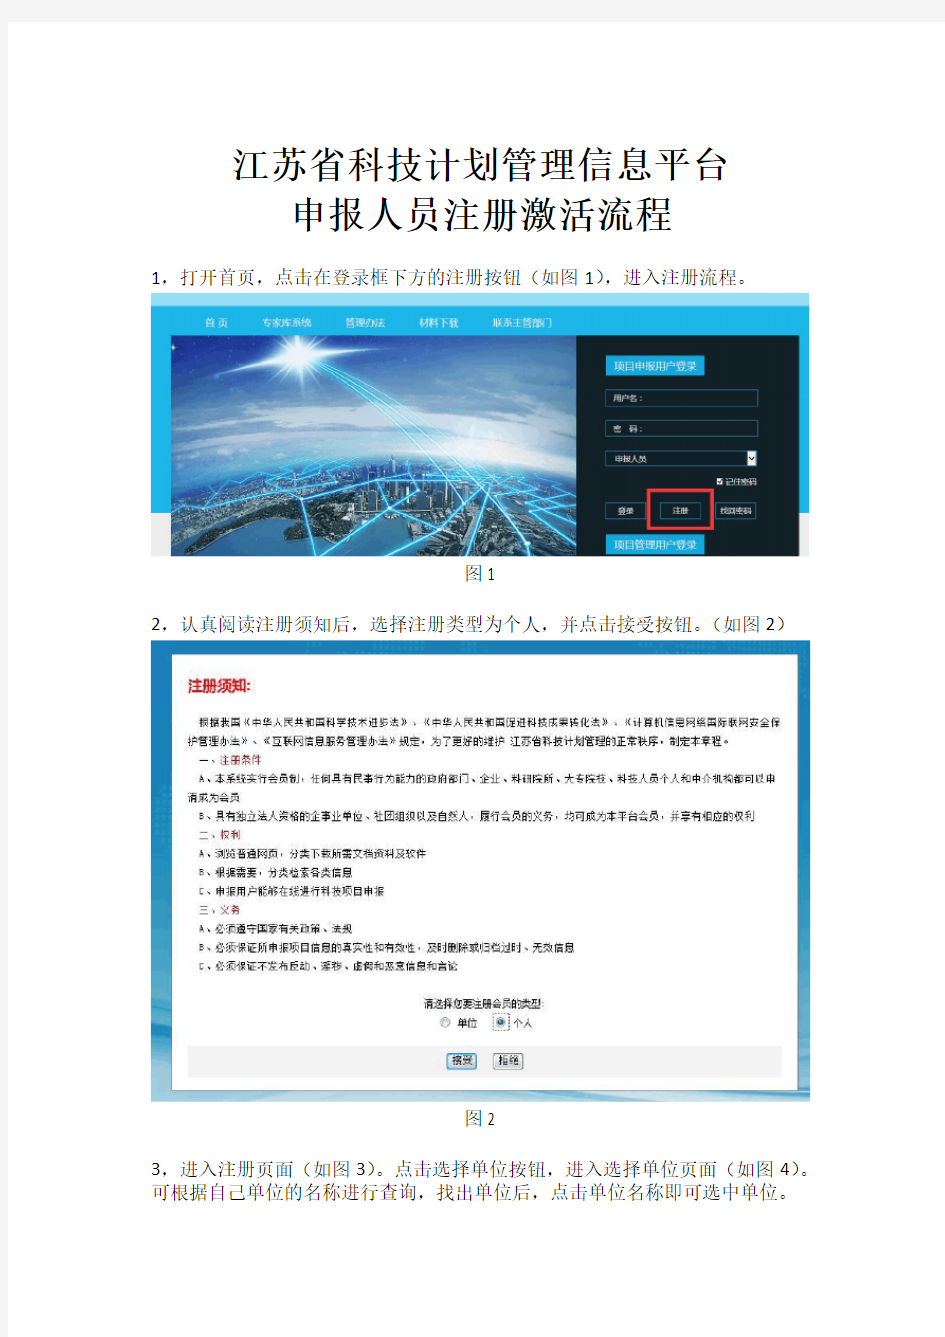 江苏省科技计划管理信息平台